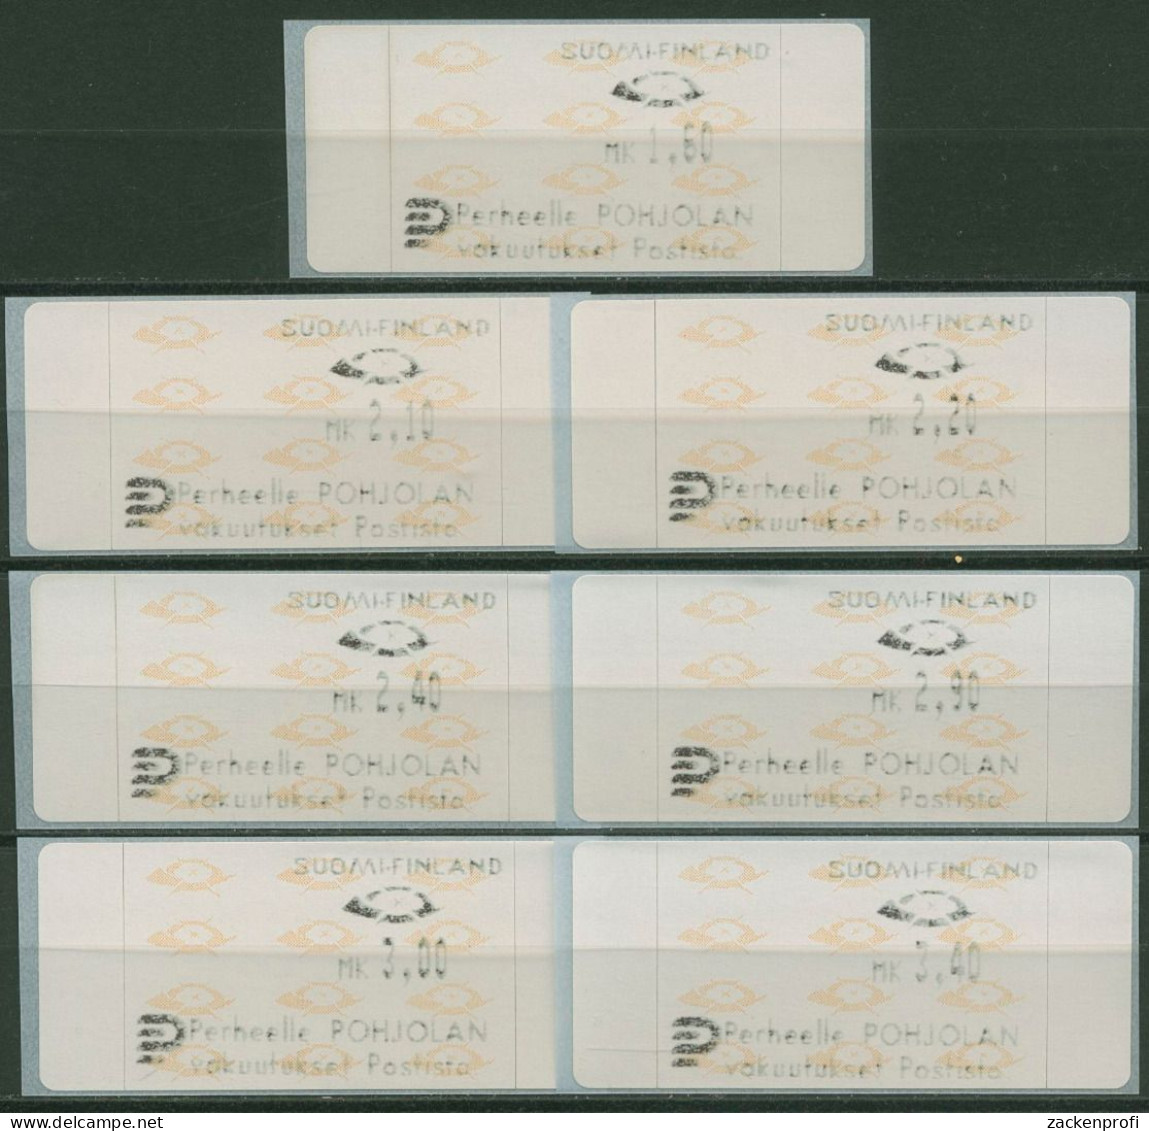 Finnland Automatenmarken 1992 Posthörner Satz 7 Werte ATM 12.3 S1 Postfrisch - Machine Labels [ATM]